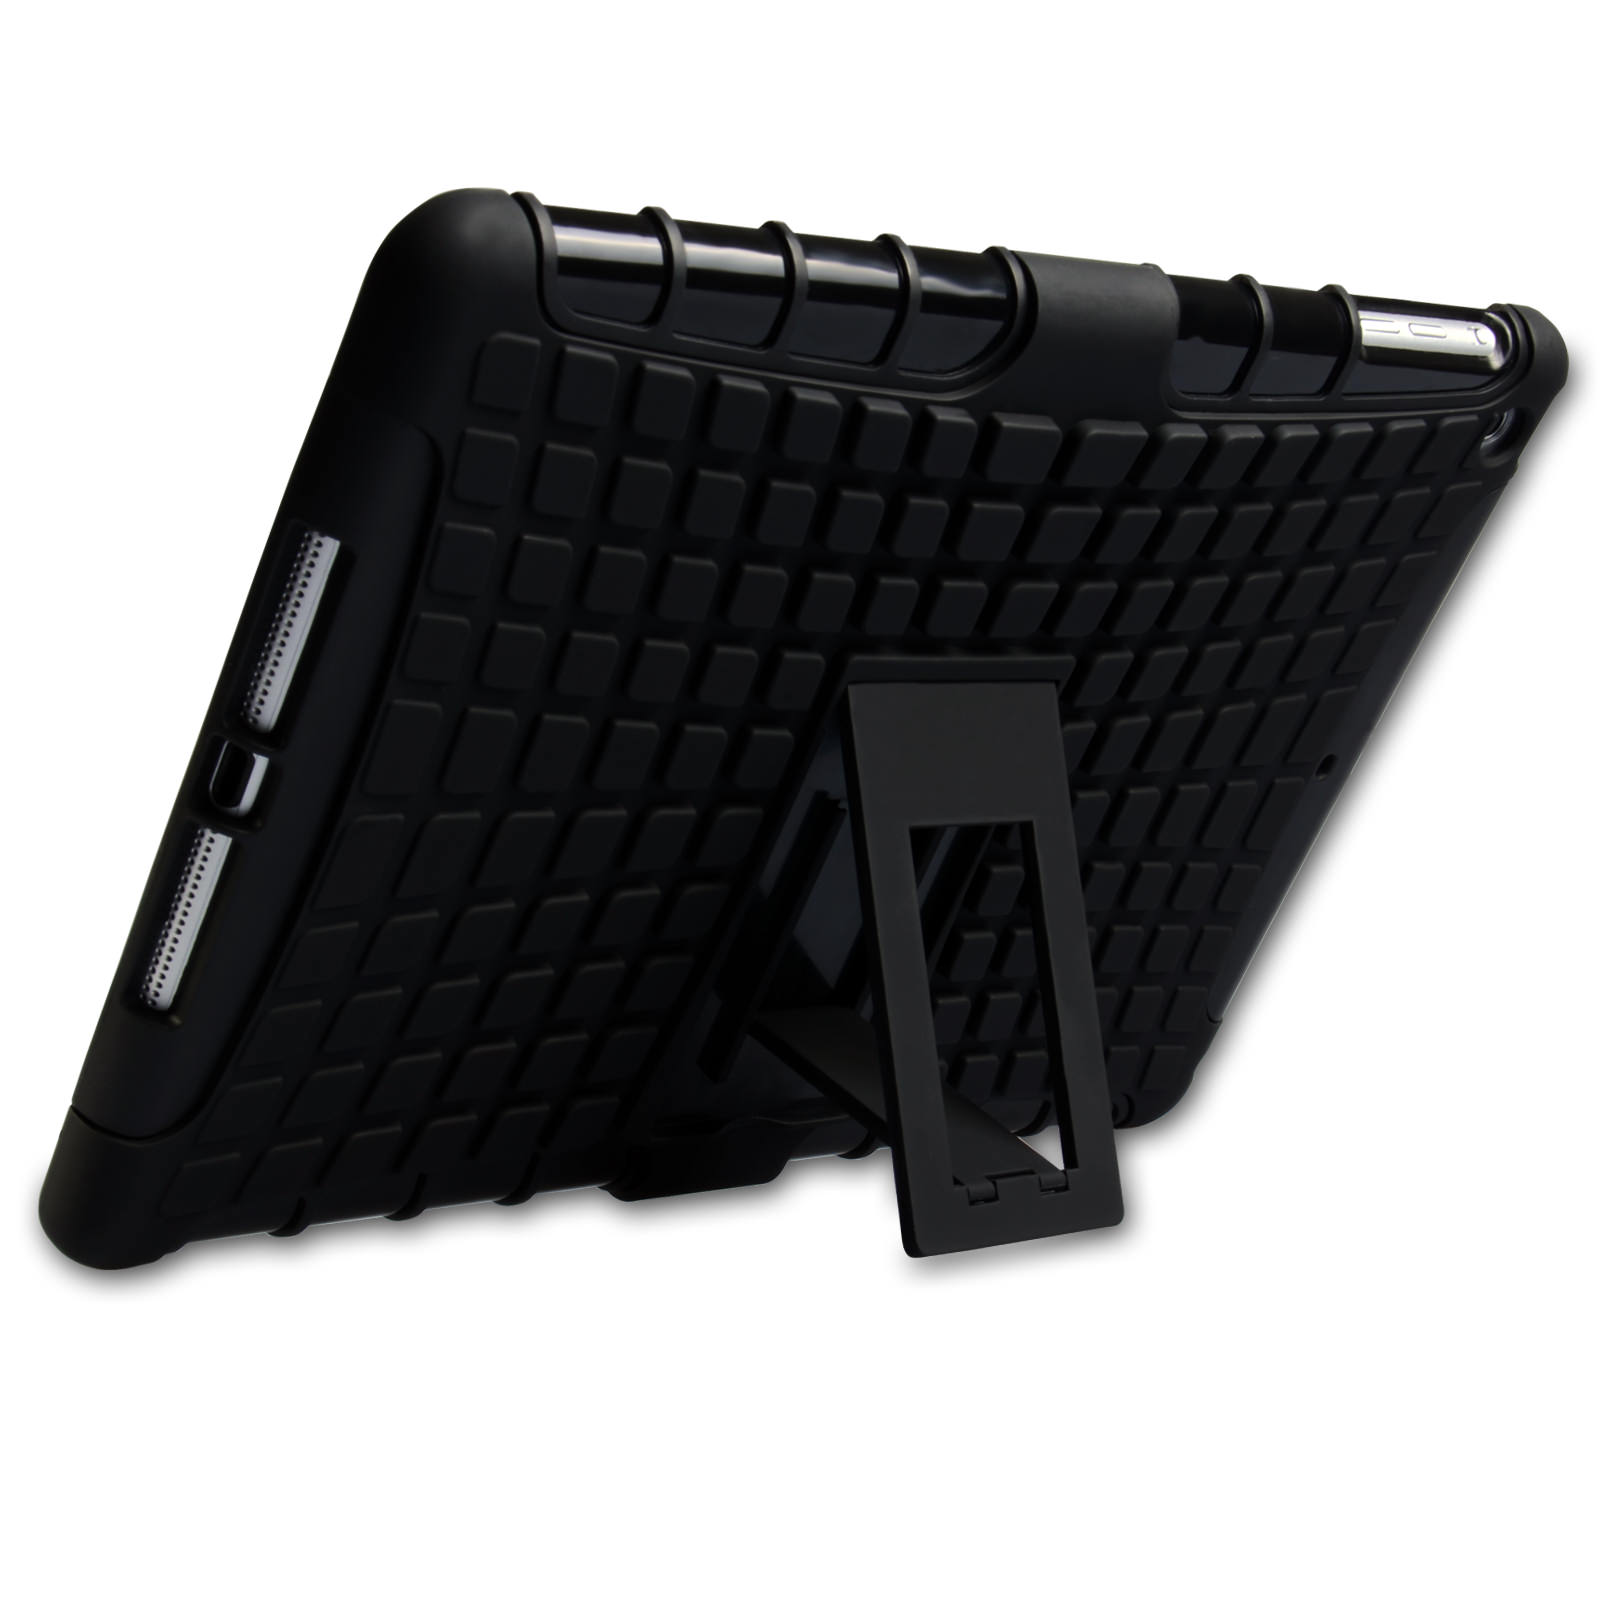 Caseflex iPad Mini 2, 3 Tough Stand Cover - Black